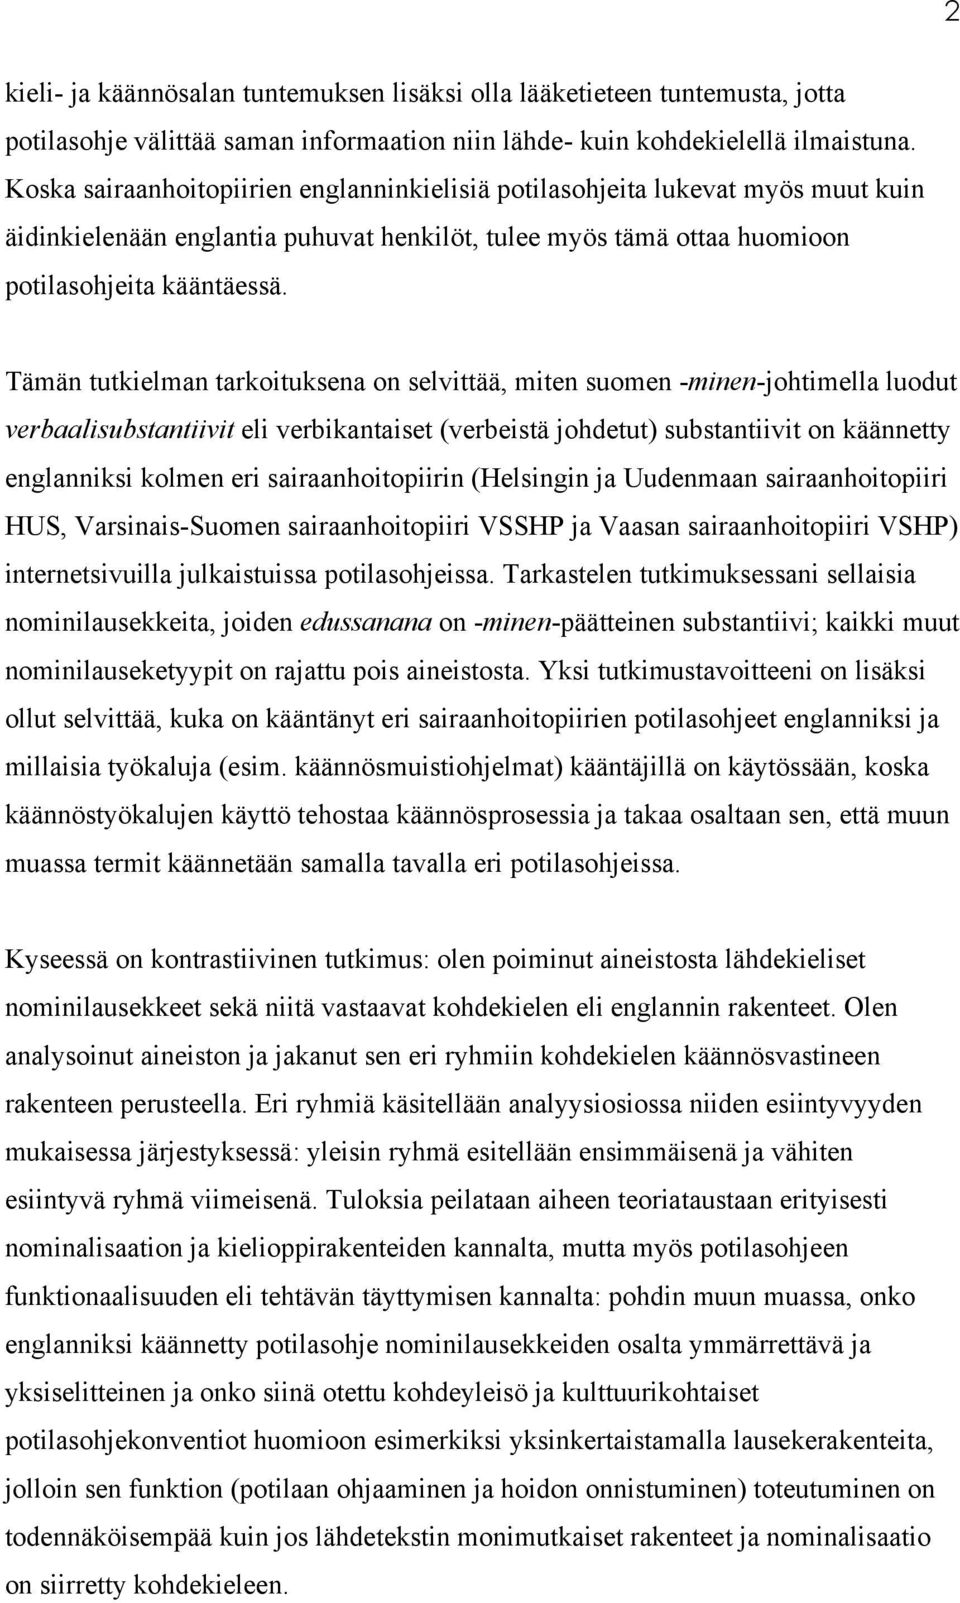 Tämän tutkielman tarkoituksena on selvittää, miten suomen -minen-johtimella luodut verbaalisubstantiivit eli verbikantaiset (verbeistä johdetut) substantiivit on käännetty englanniksi kolmen eri